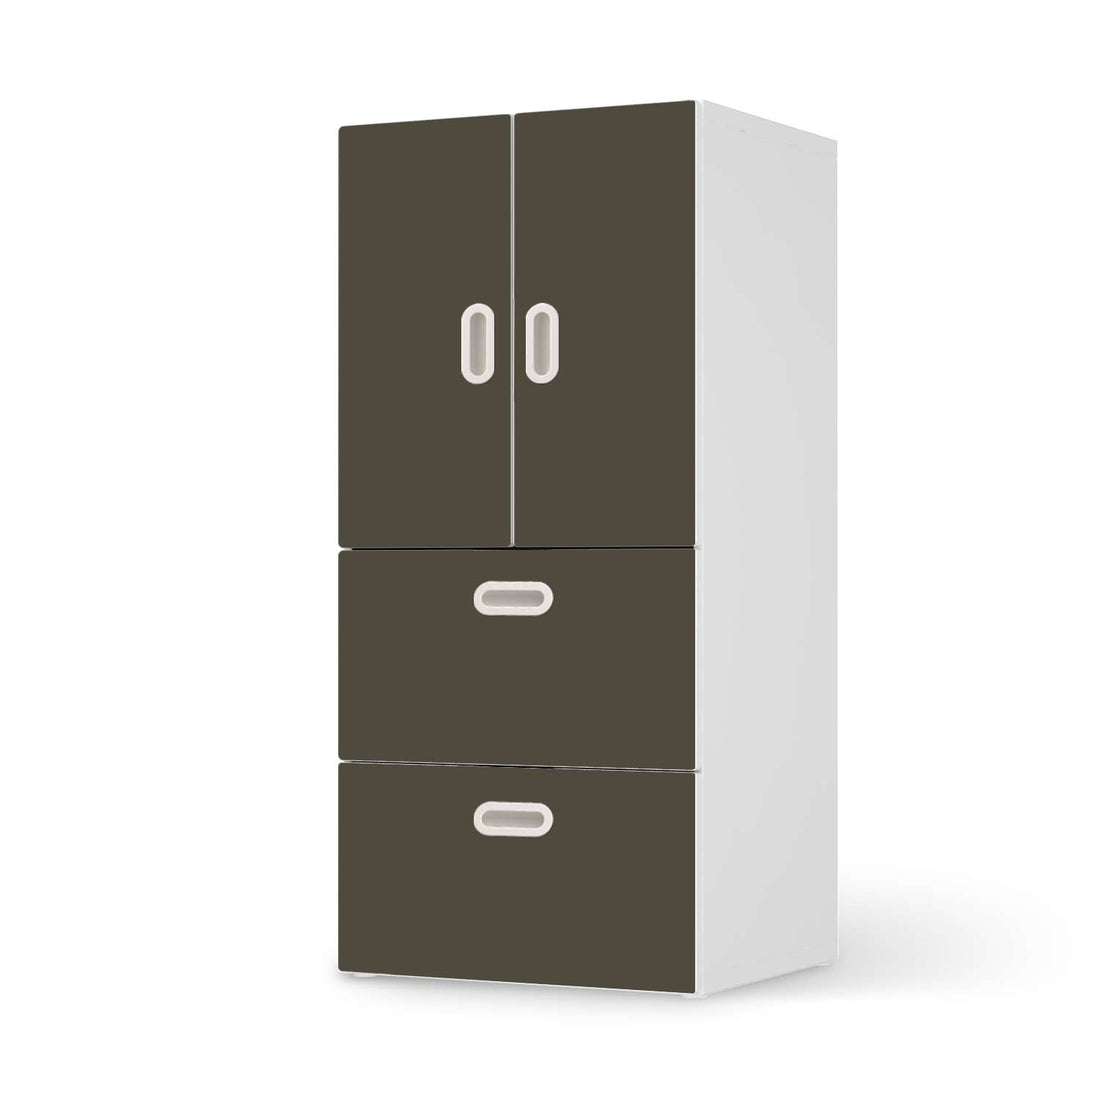 Möbelfolie Braungrau Dark - IKEA Stuva / Fritids kombiniert - 2 Schubladen und 2 kleine Türen  - weiss